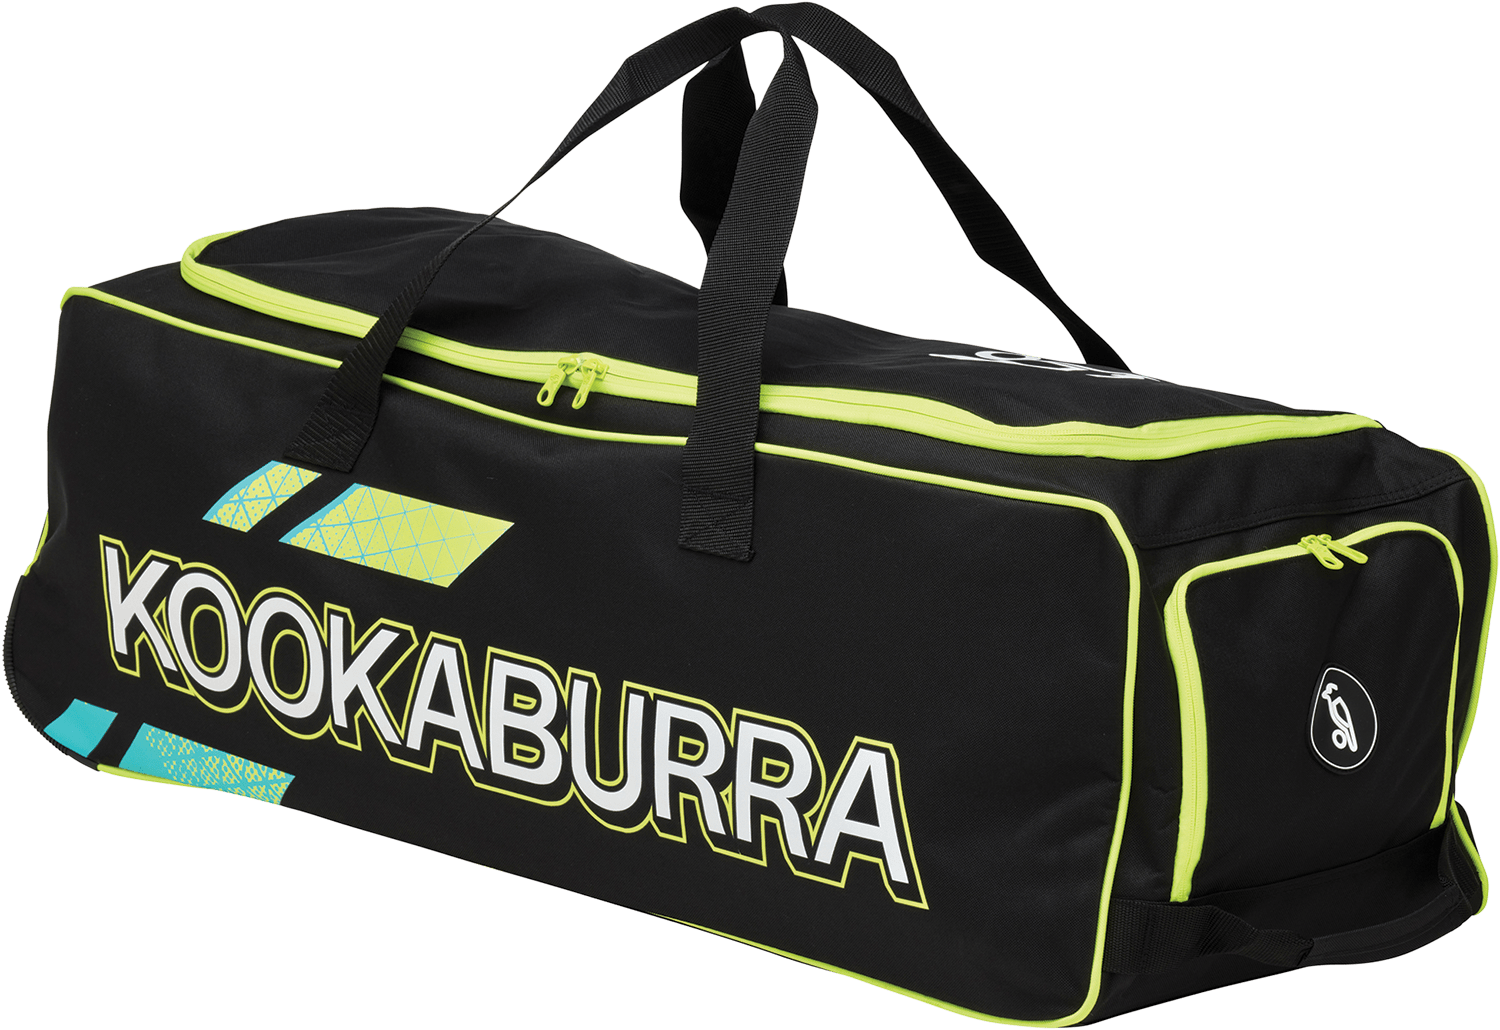 Kookaburra Cricket Bags Yellow Kookaburra 4.0 Wheelie Cricket Bag